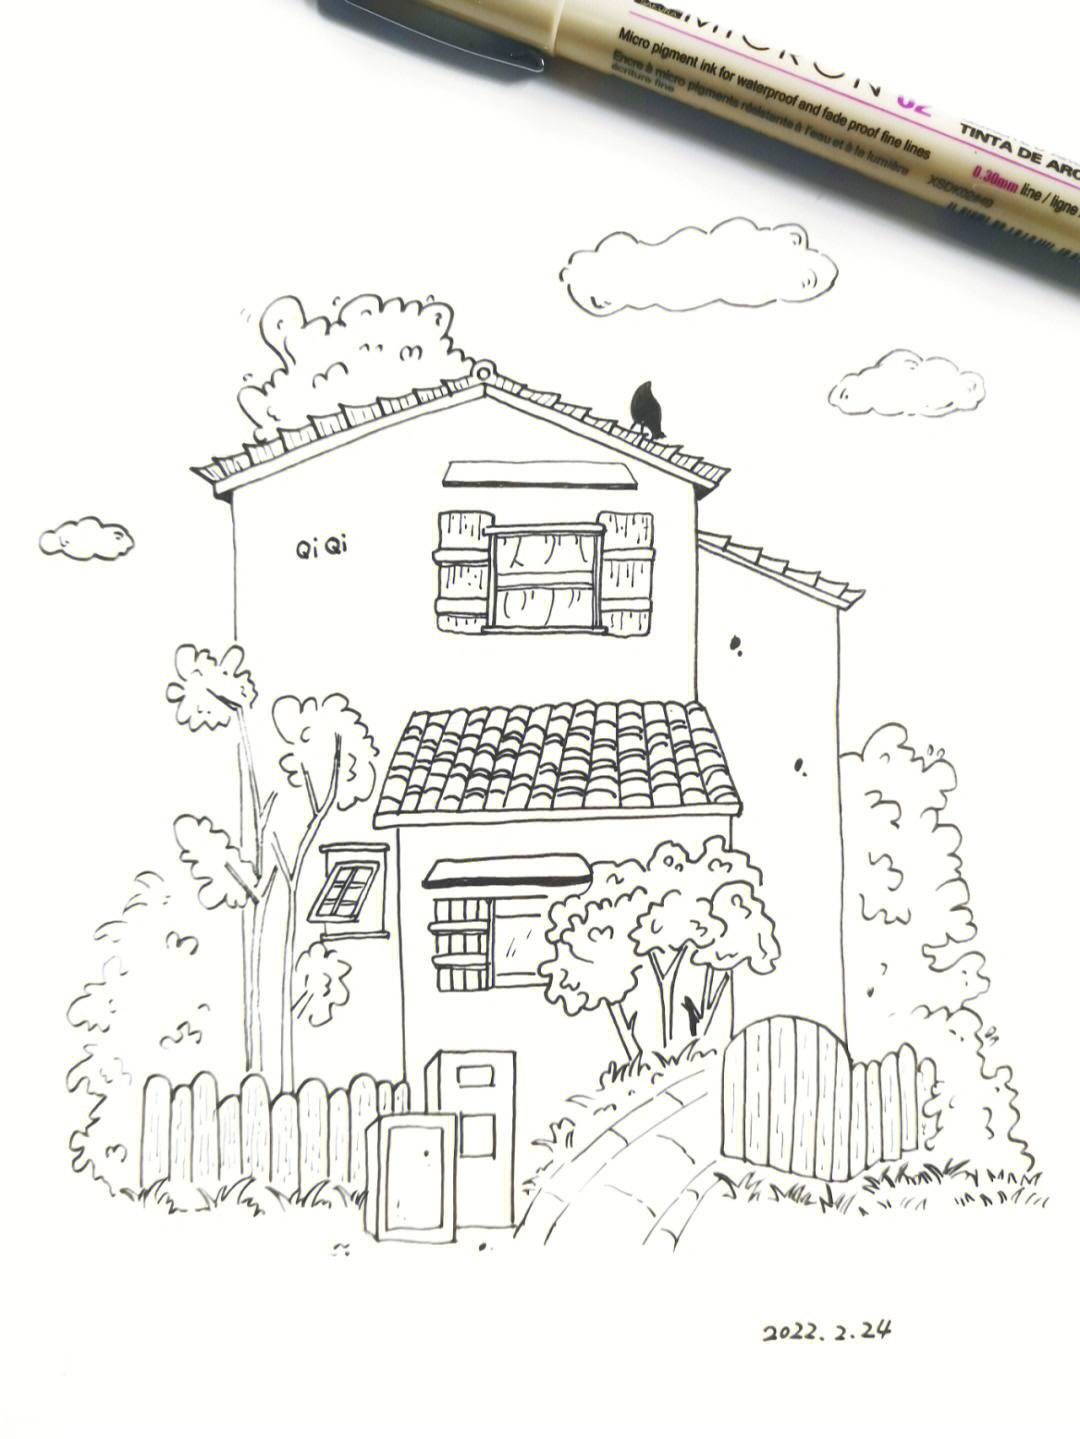 黑白画简单房子图片